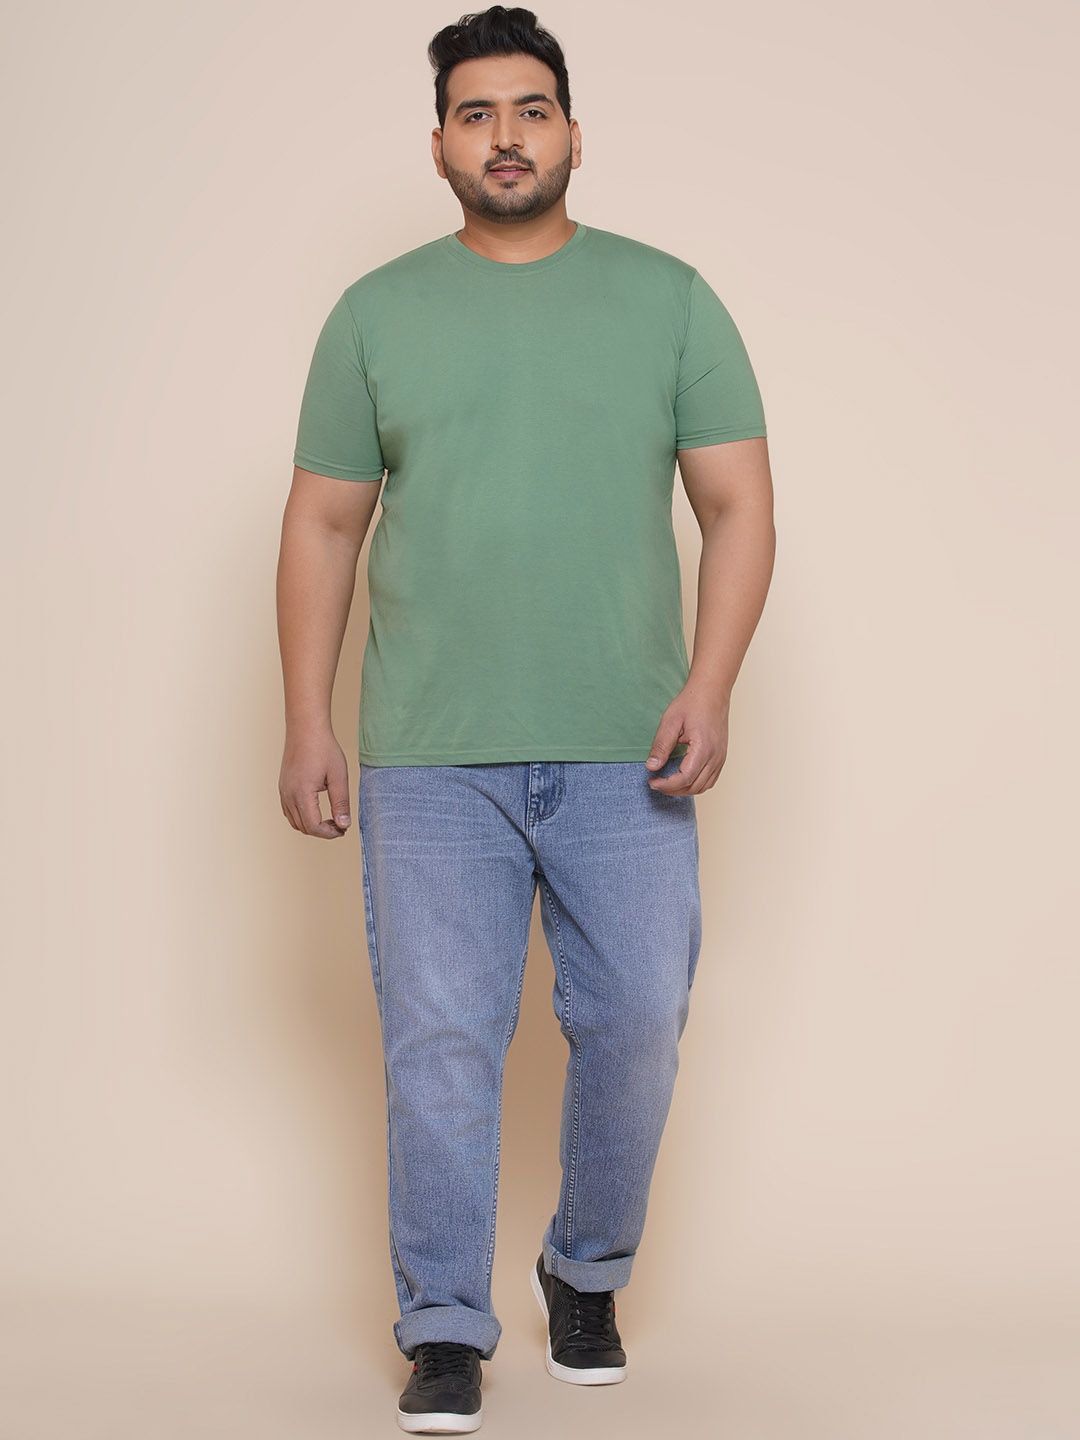 bottomwear/jeans/EJPJ25081/ejpj25081-3.jpg